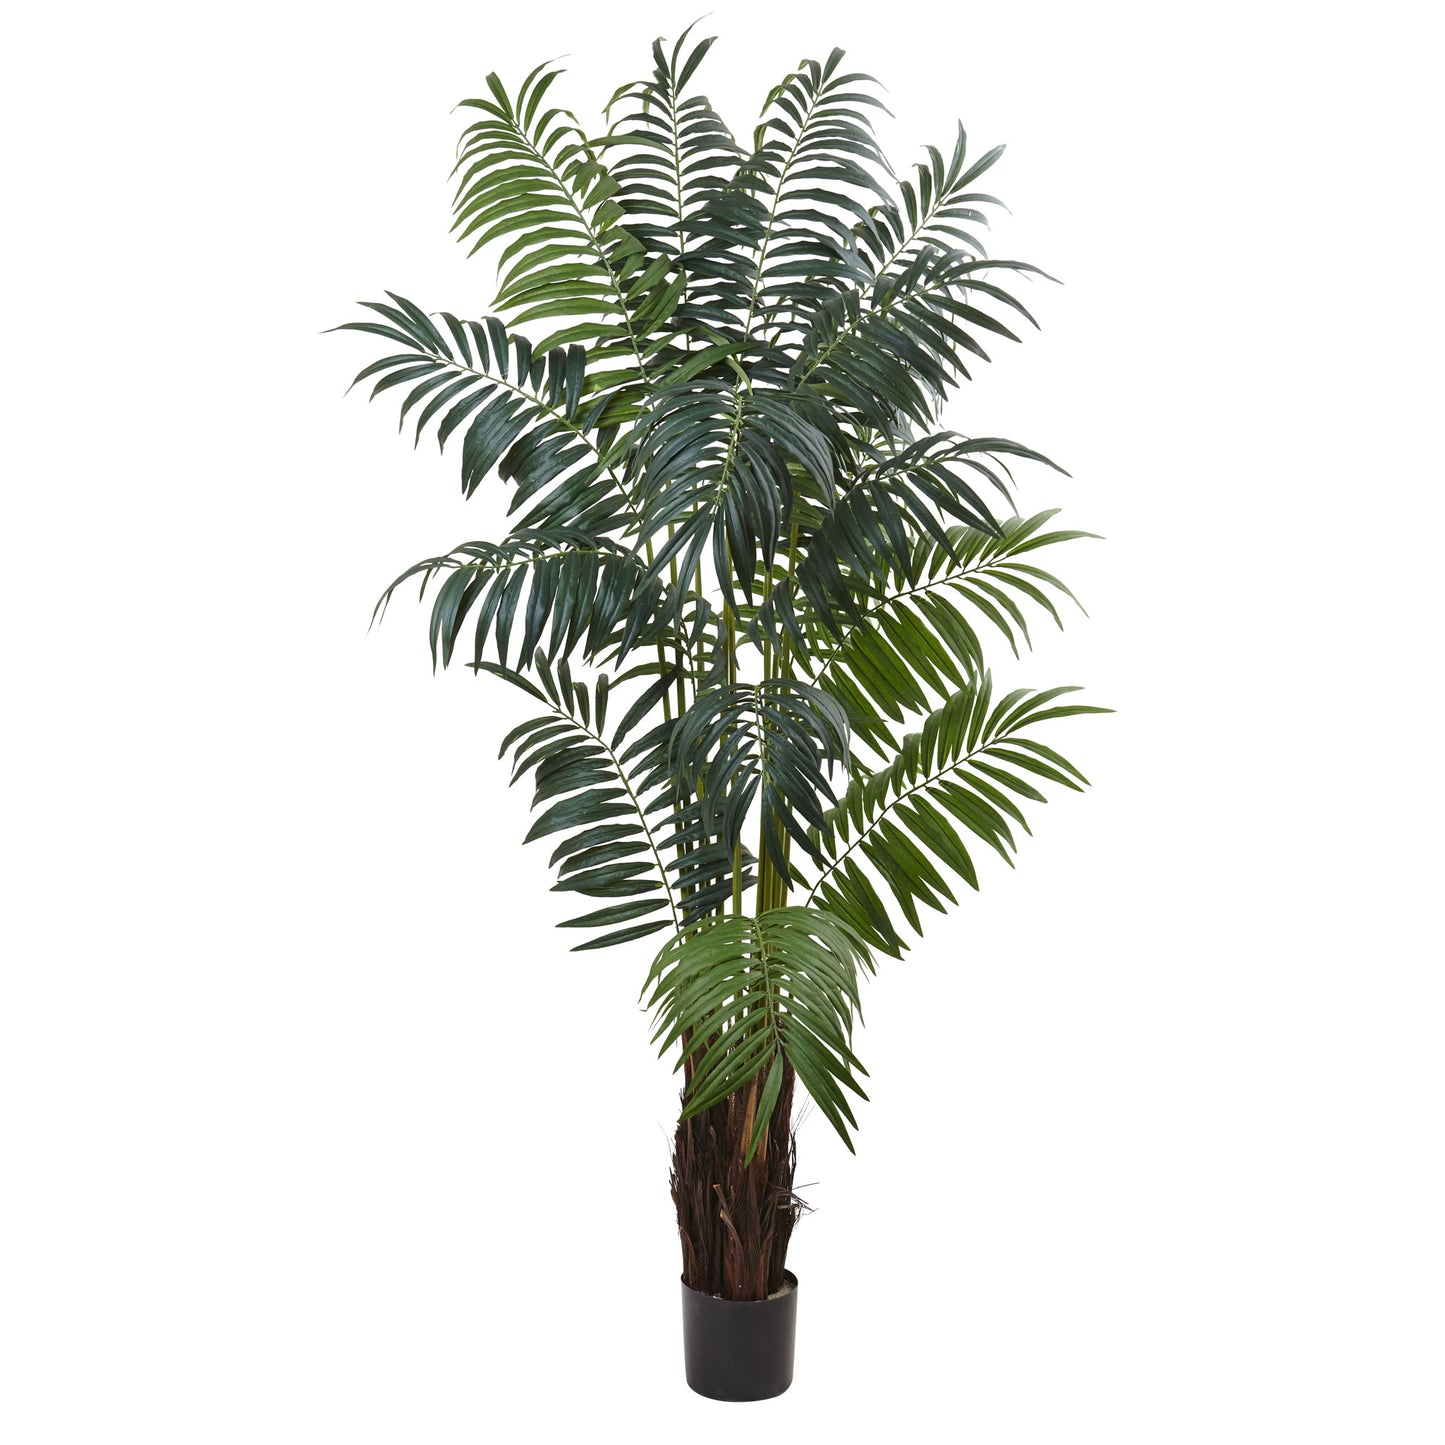 7.5’ Bulb Areca Palm Tree